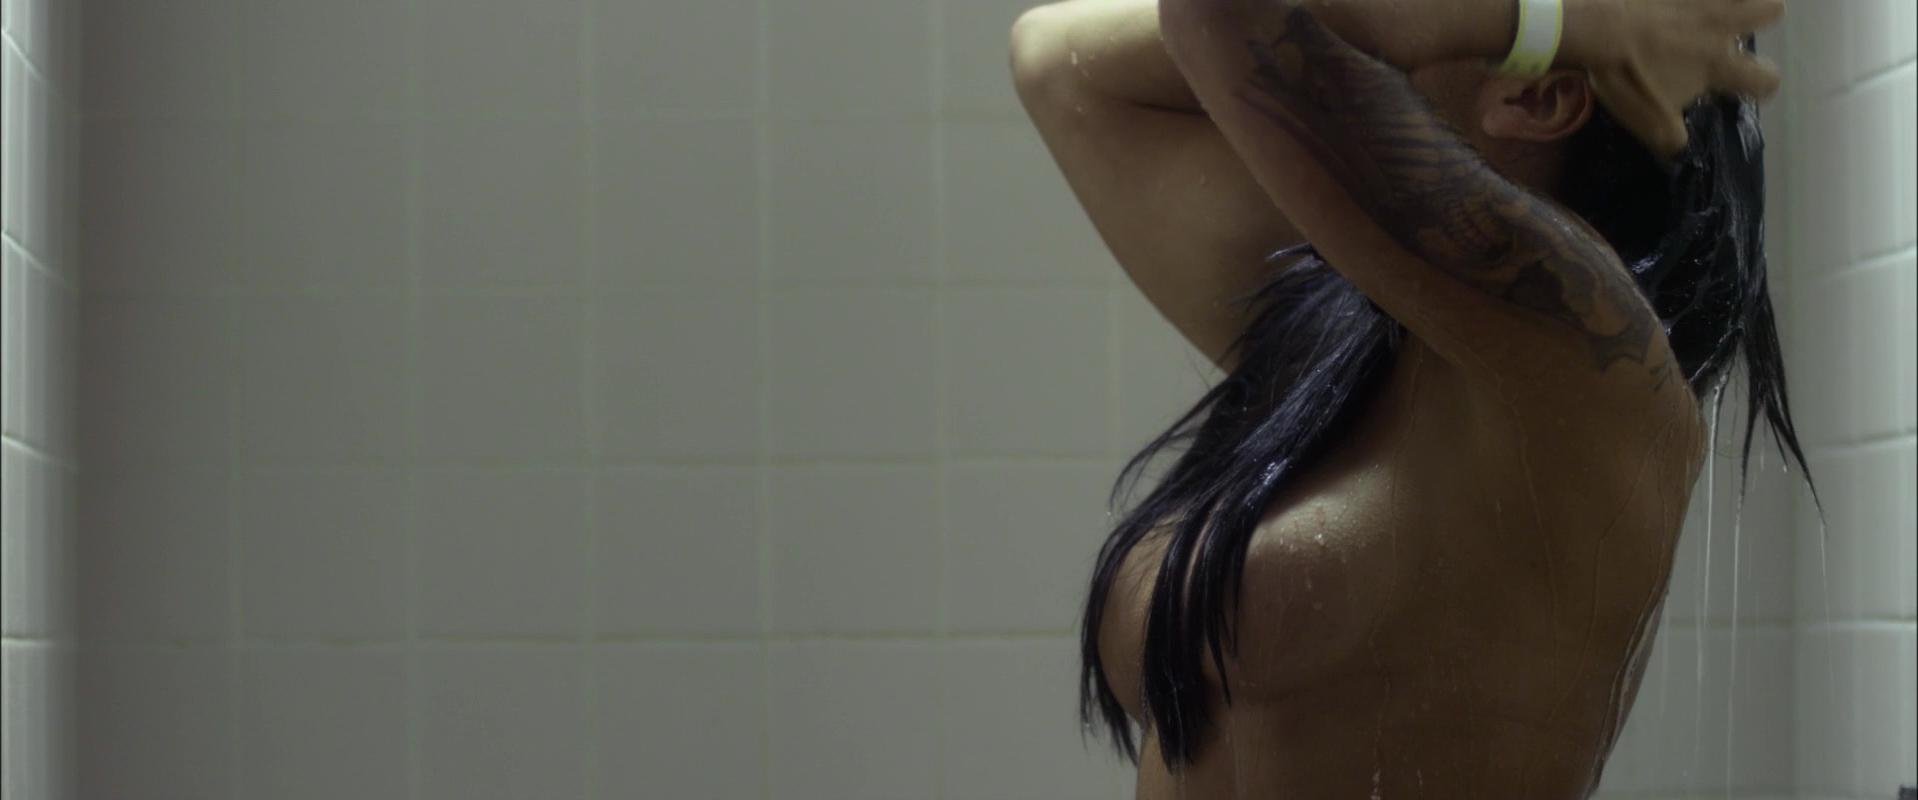 Nude video celebs Â» Actress Â» Portia Doubleday